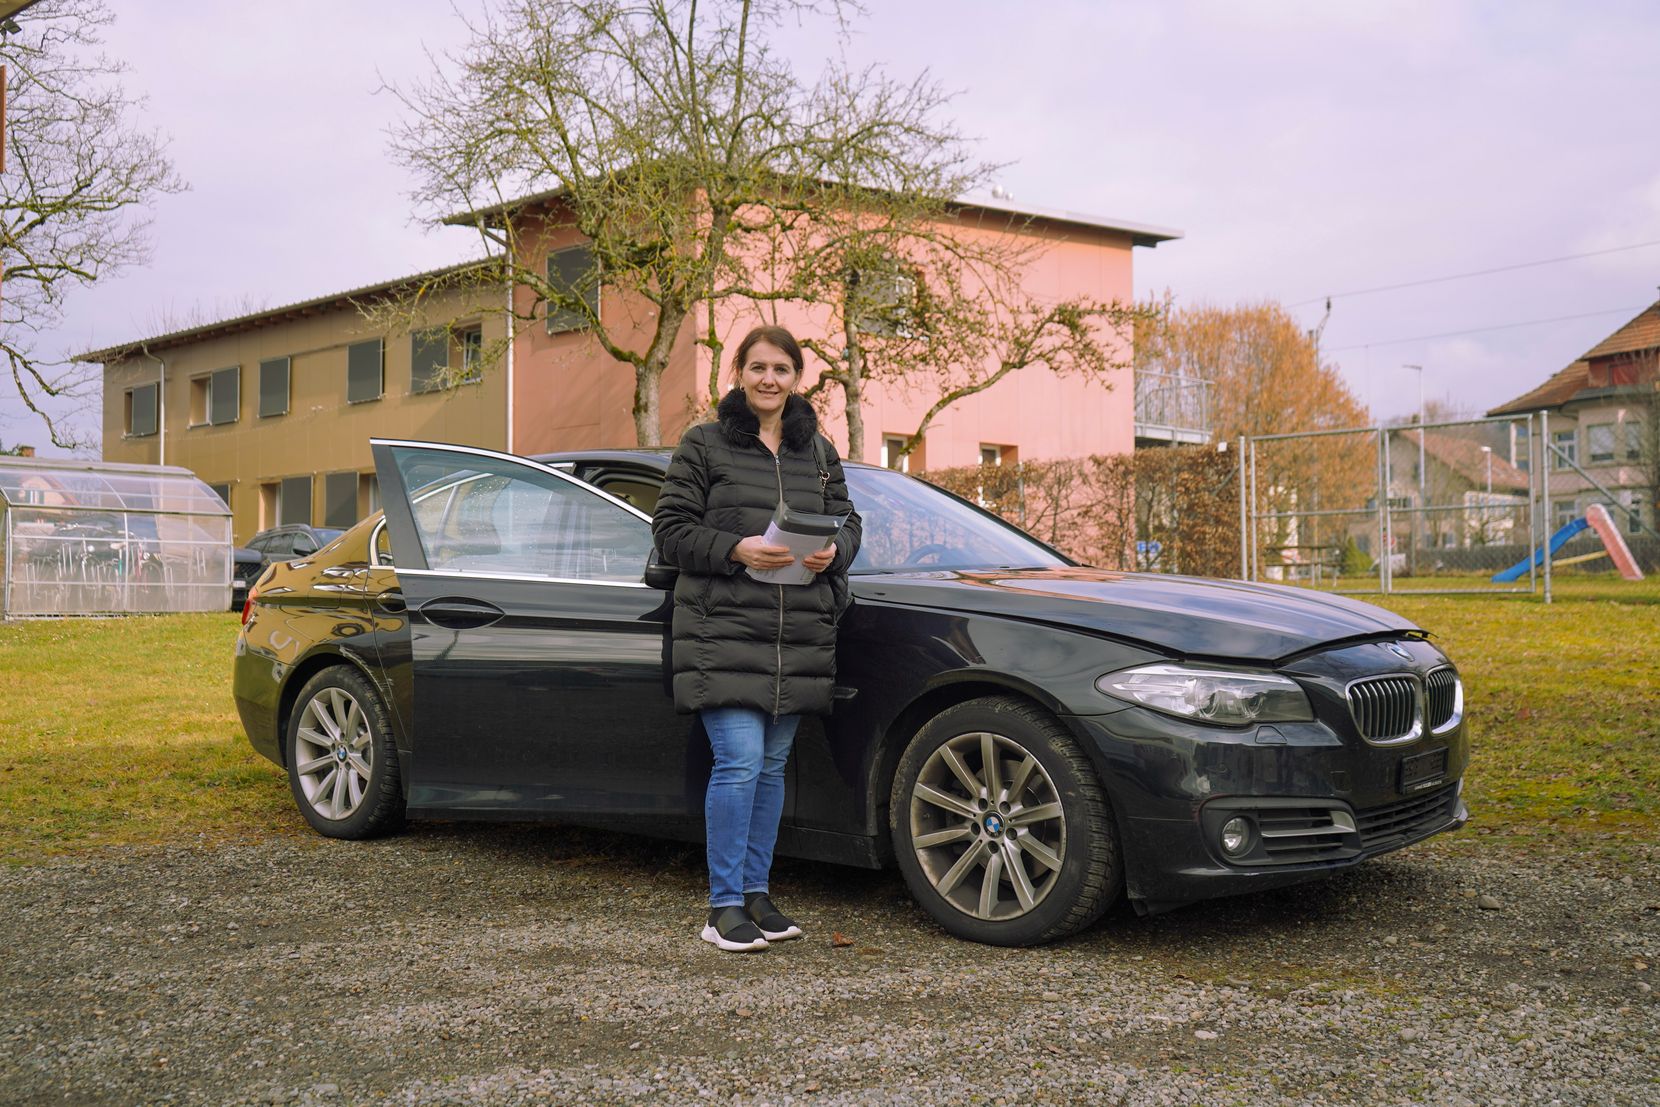 Versteigerung BMW Pfäffikon - Am 23. Februar wurde in Pfäffikon ein BMW versteigert. Luljeta Kastrati bot mit 16'000 Franken am meisten.